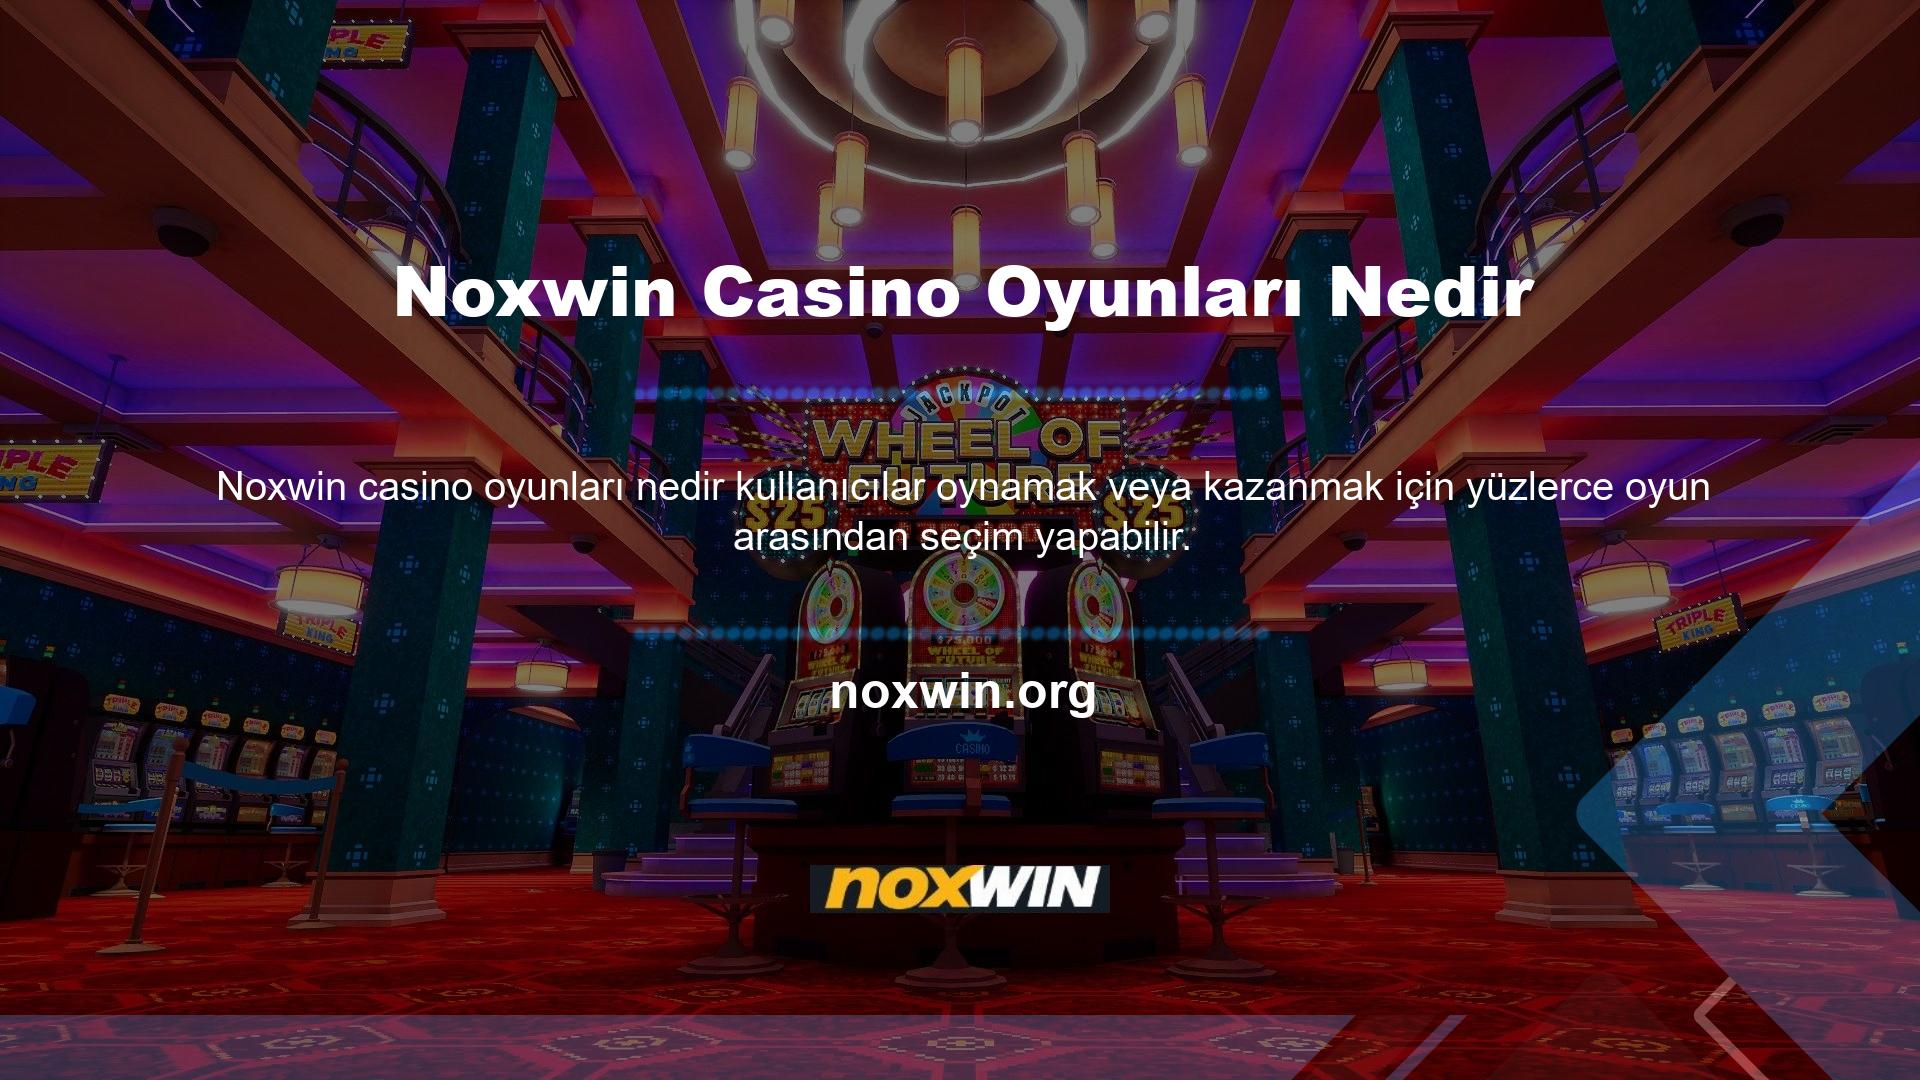 Sürekli güncellenen ve geliştirilen online bahis platformları, casino bölümlerine sıklıkla yeni oyunlar eklemektedir